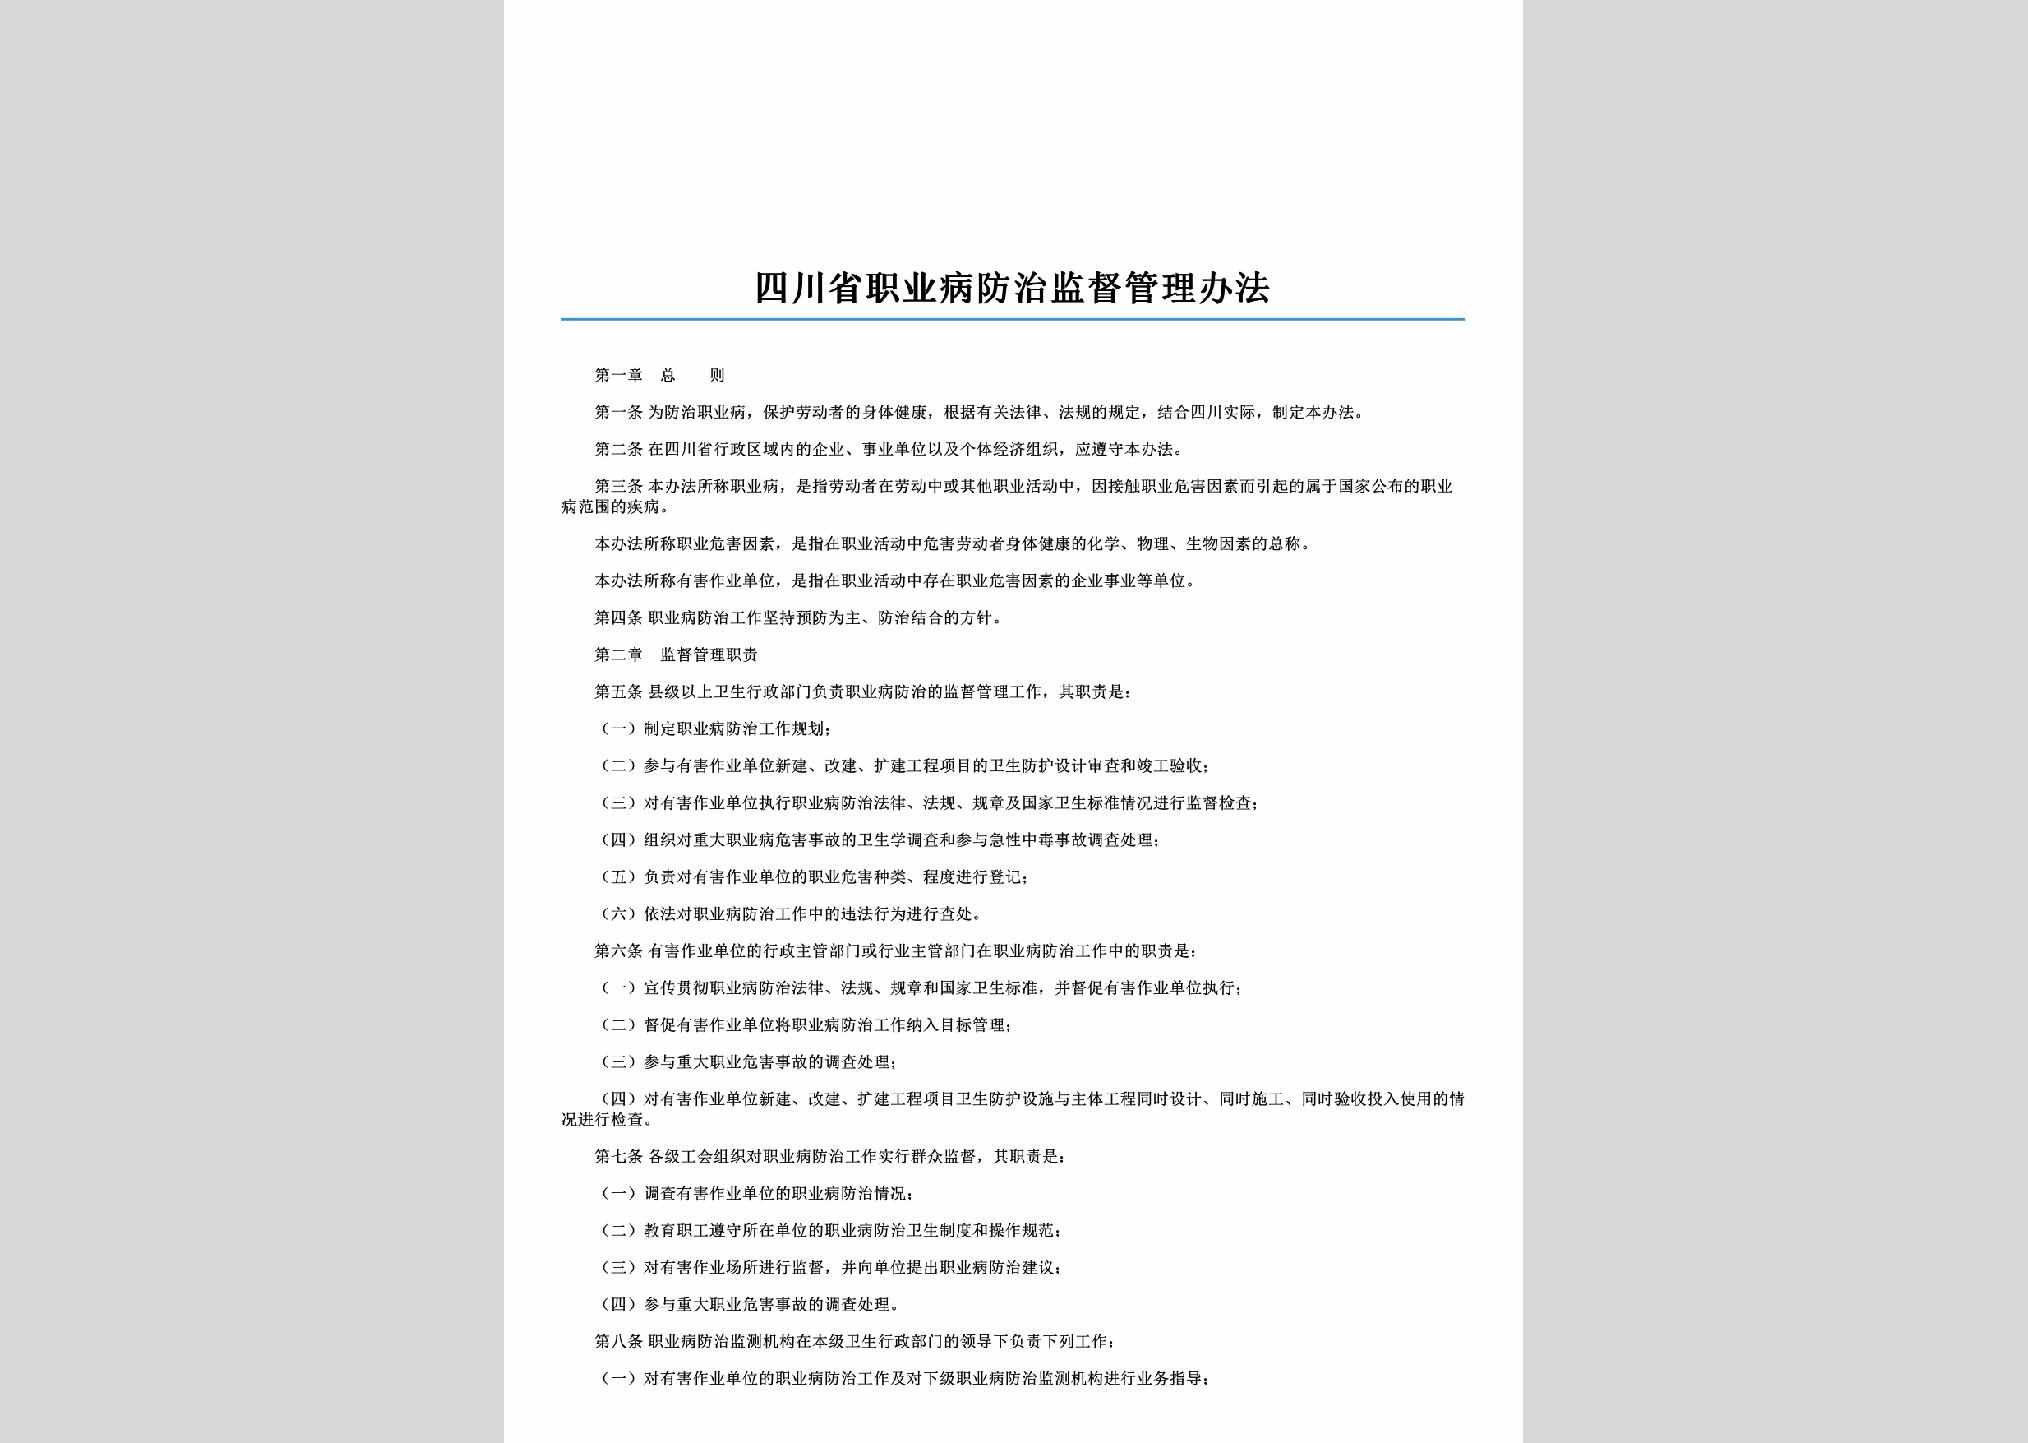 SC-ZYBFZGL-2006：四川省职业病防治监督管理办法